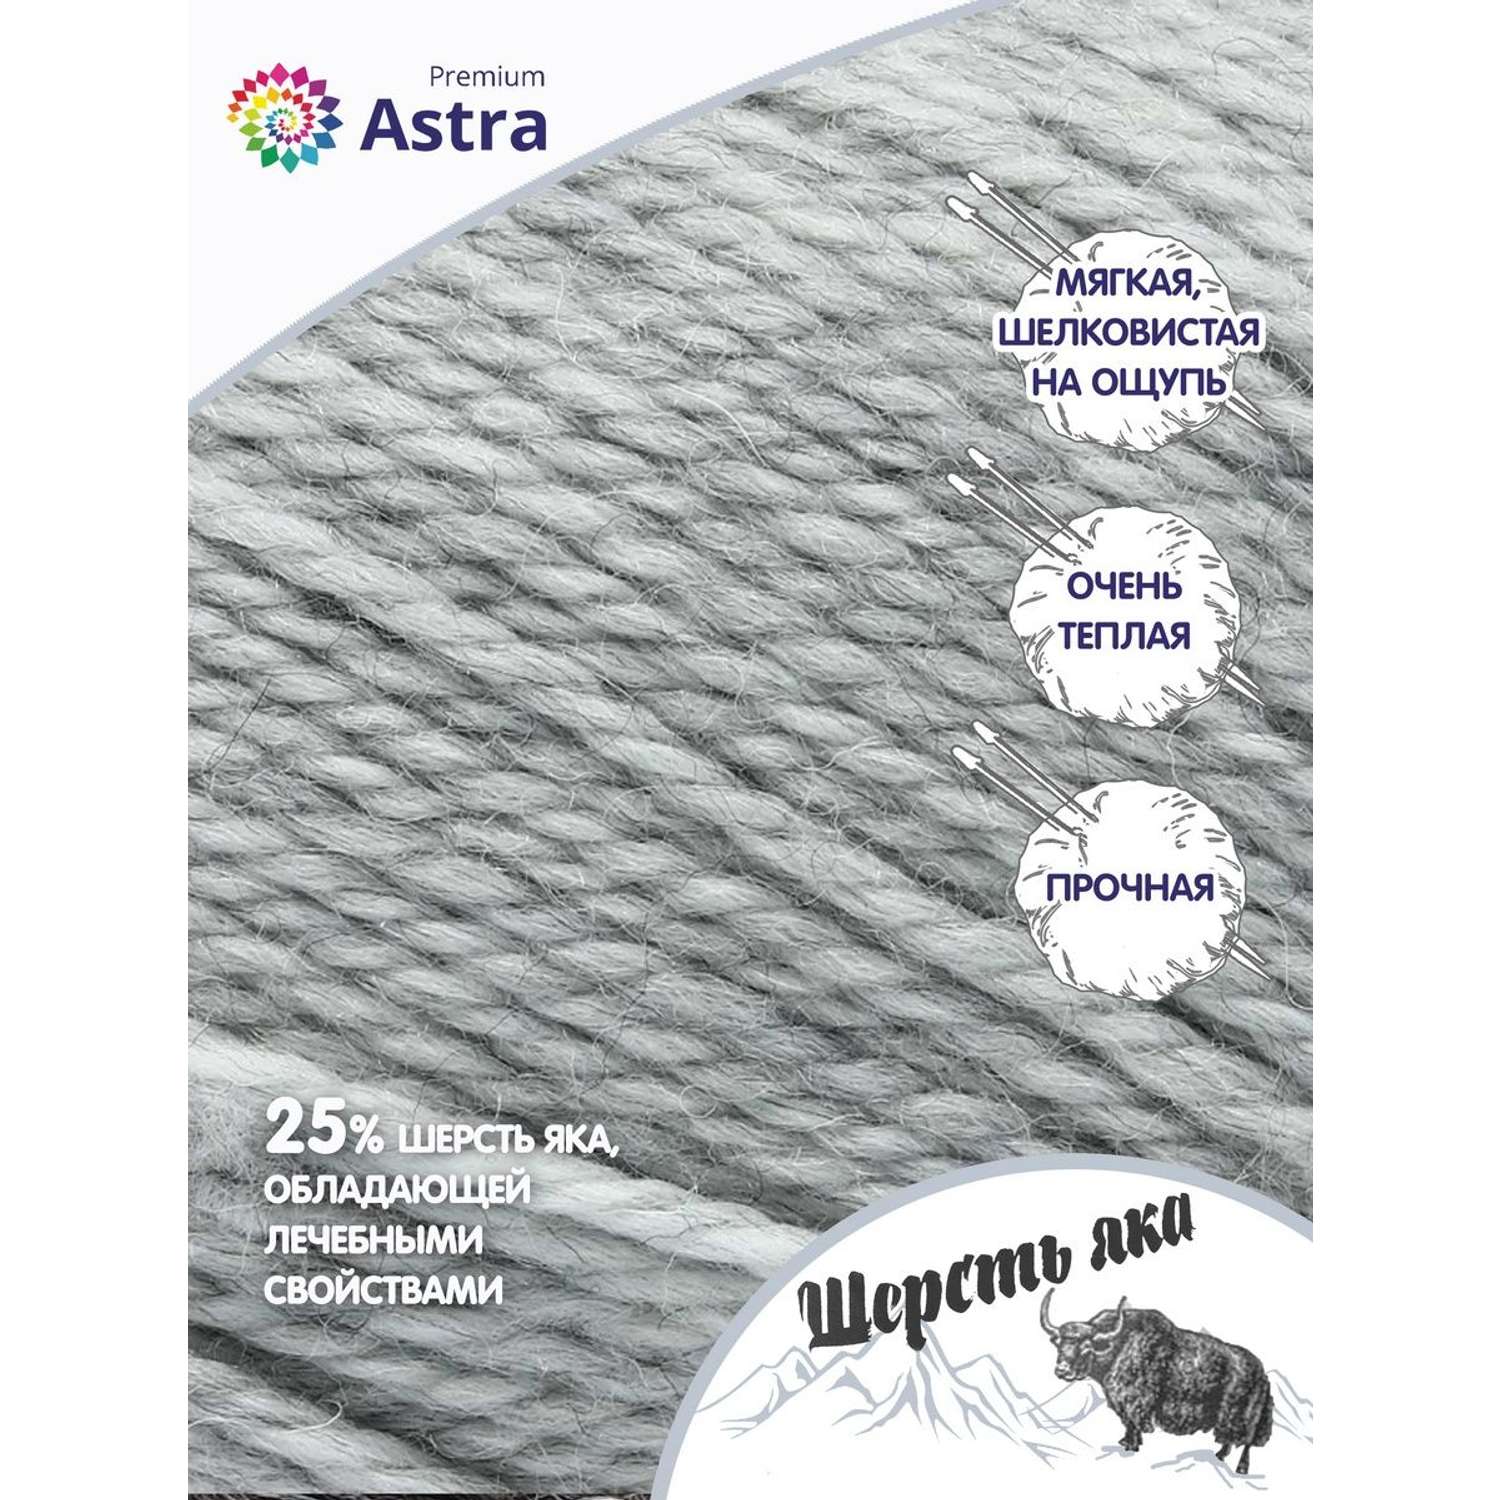 Пряжа Astra Premium Шерсть яка Yak wool теплая мягкая 100 г 120 м 20 перламутровый 2 мотка - фото 2